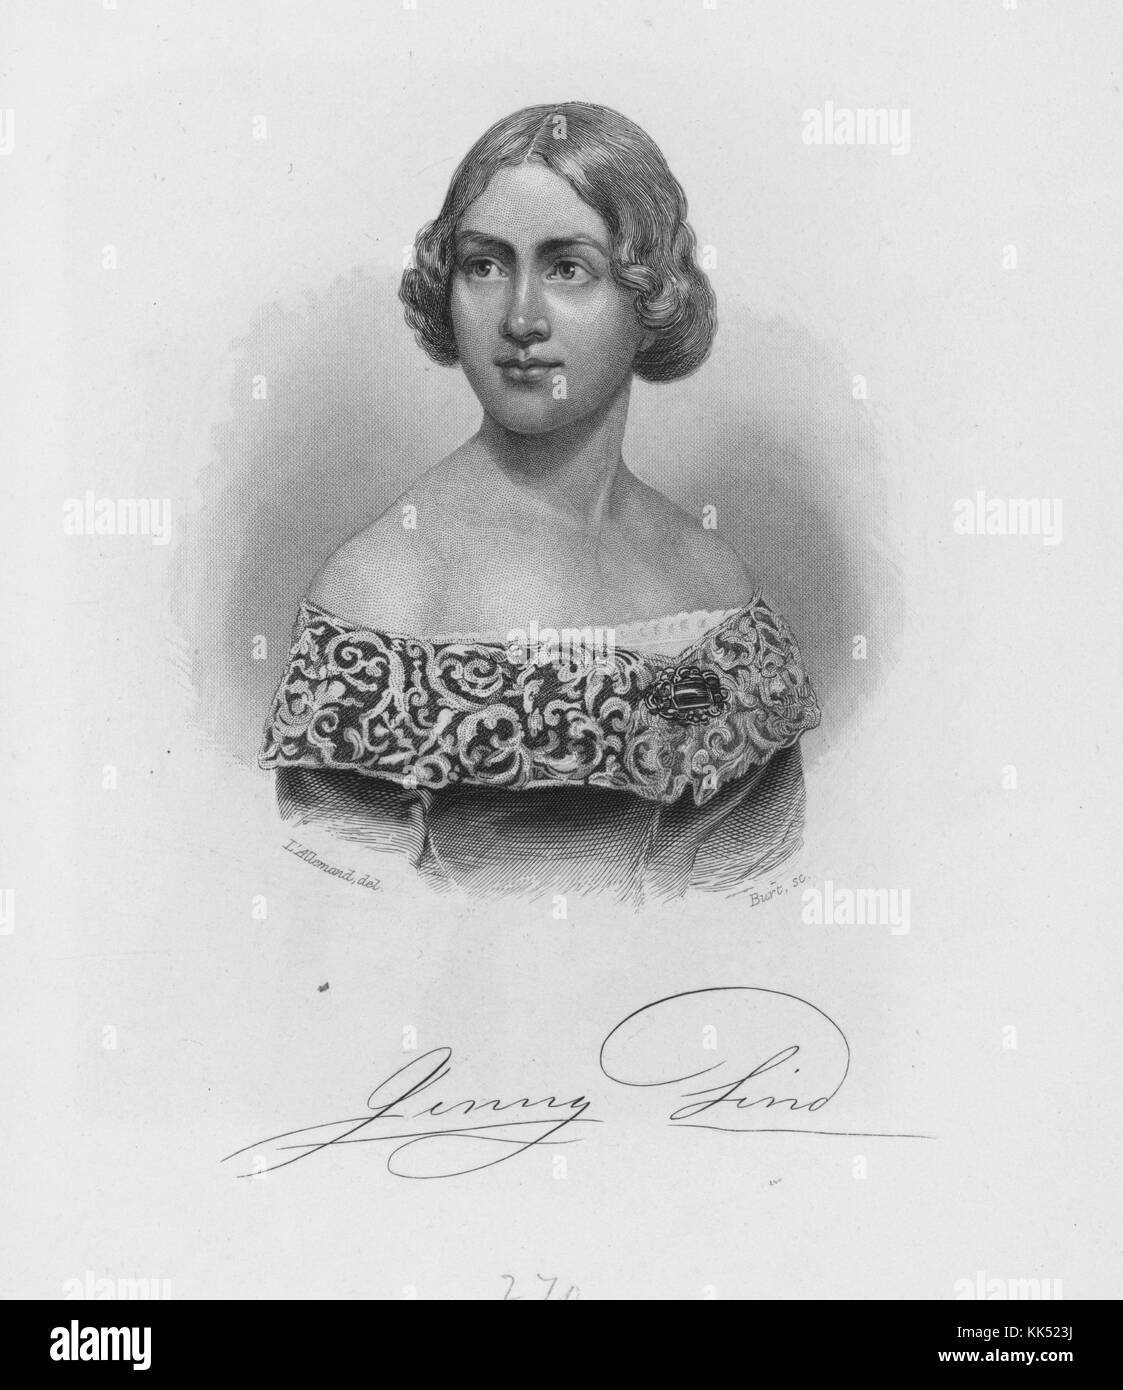 Eine Gravur aus einem Porträt von Jenny Lind. Sie war eine schwedische Opernsängerin mit dem Spitznamen „die schwedische Nachtigall“, besonders beliebt in Schweden und nordeuropäischen Ländern. Sie wurde auch sehr beliebt in den USA, nachdem sie 1850 auf Einladung von PT Barnum durch das Land gereist war. Später in ihrer Karriere war sie eine Professorin für Singen am Royal College of Music in London, 1800. Aus der New York Public Library. Stockfoto